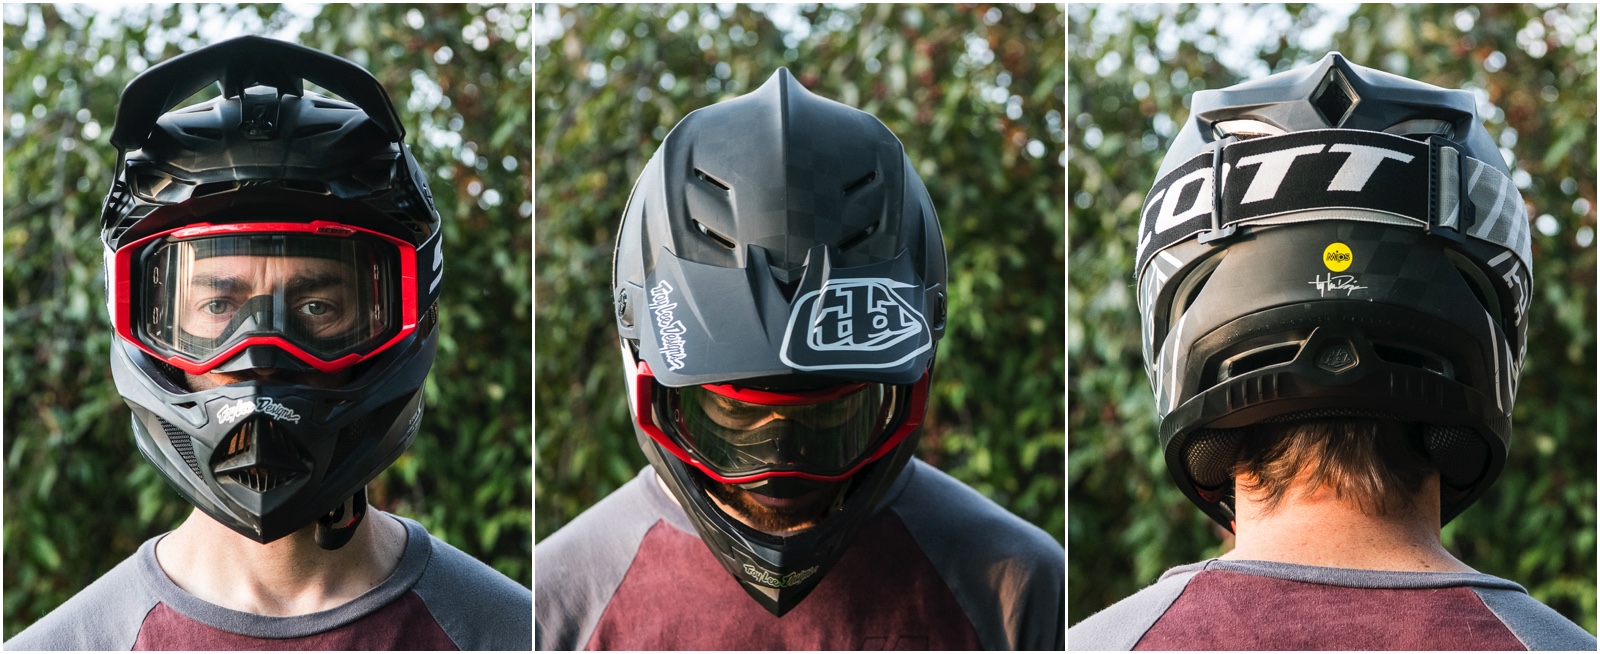 Tested] Troy Lee Designs D4 Helmet